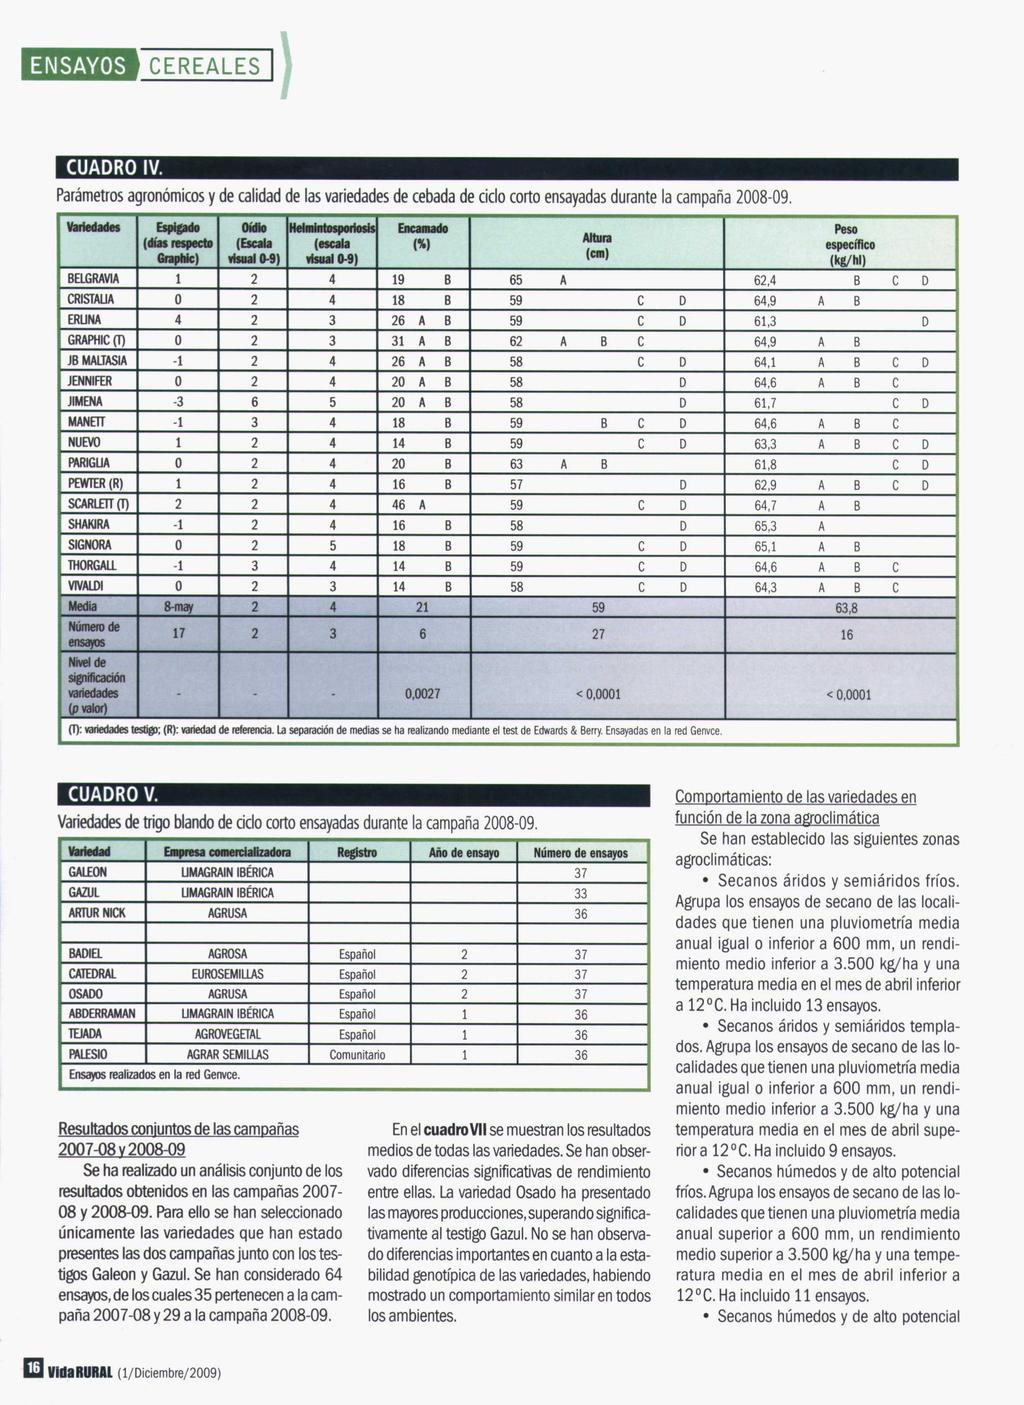 1) CUADRO IV. Parámetros agronómicos y de calidad de las variedades de cebada de ciclo corto ensayadas durante la campaña 2008-09.